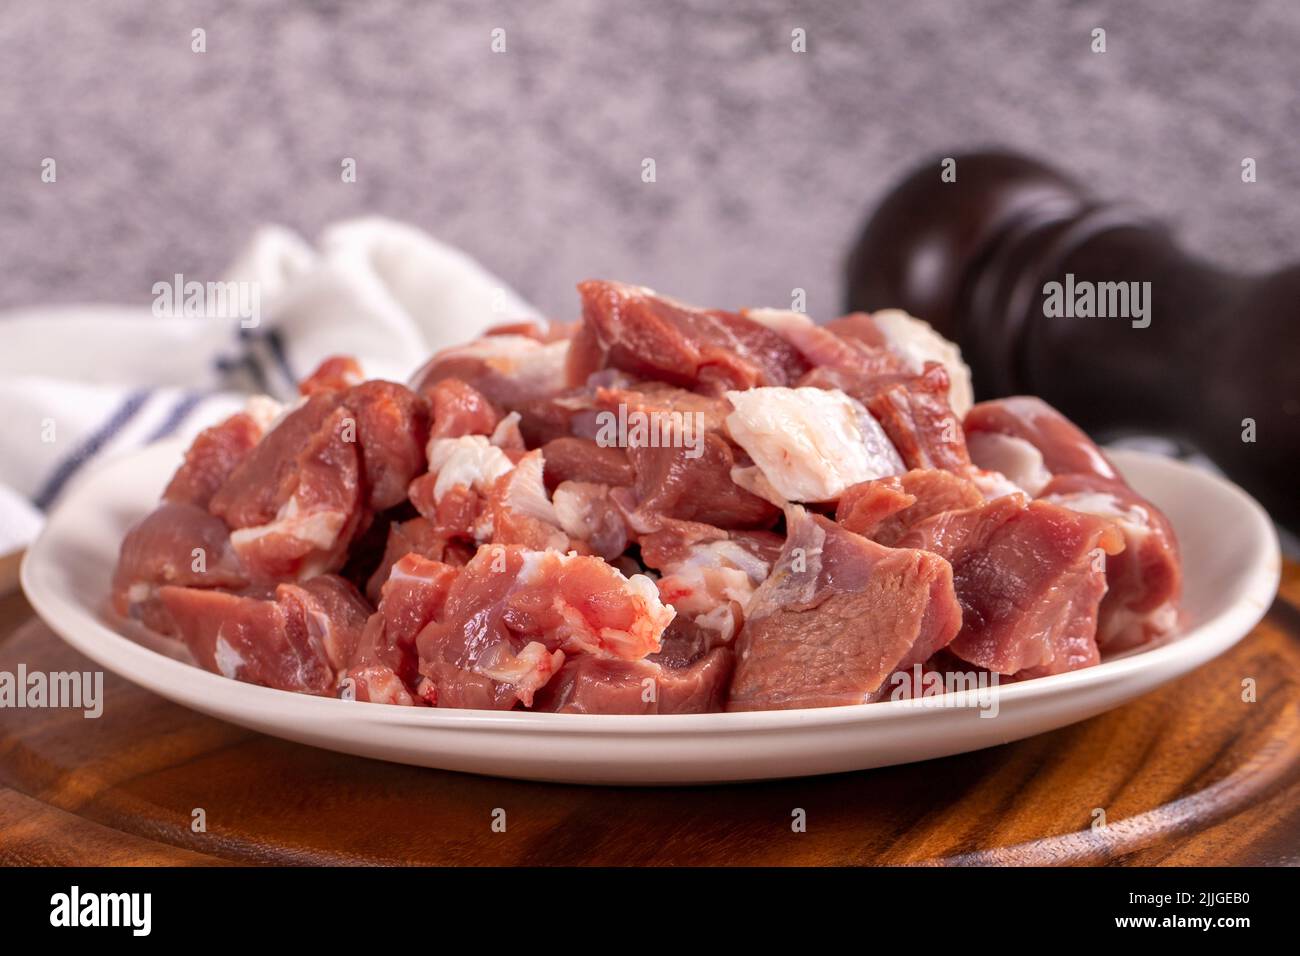 Carne de cordero en cubitos. Carne roja picada en un plato sobre un suelo de piedra. Productos de carnicero. Primer plano Foto de stock